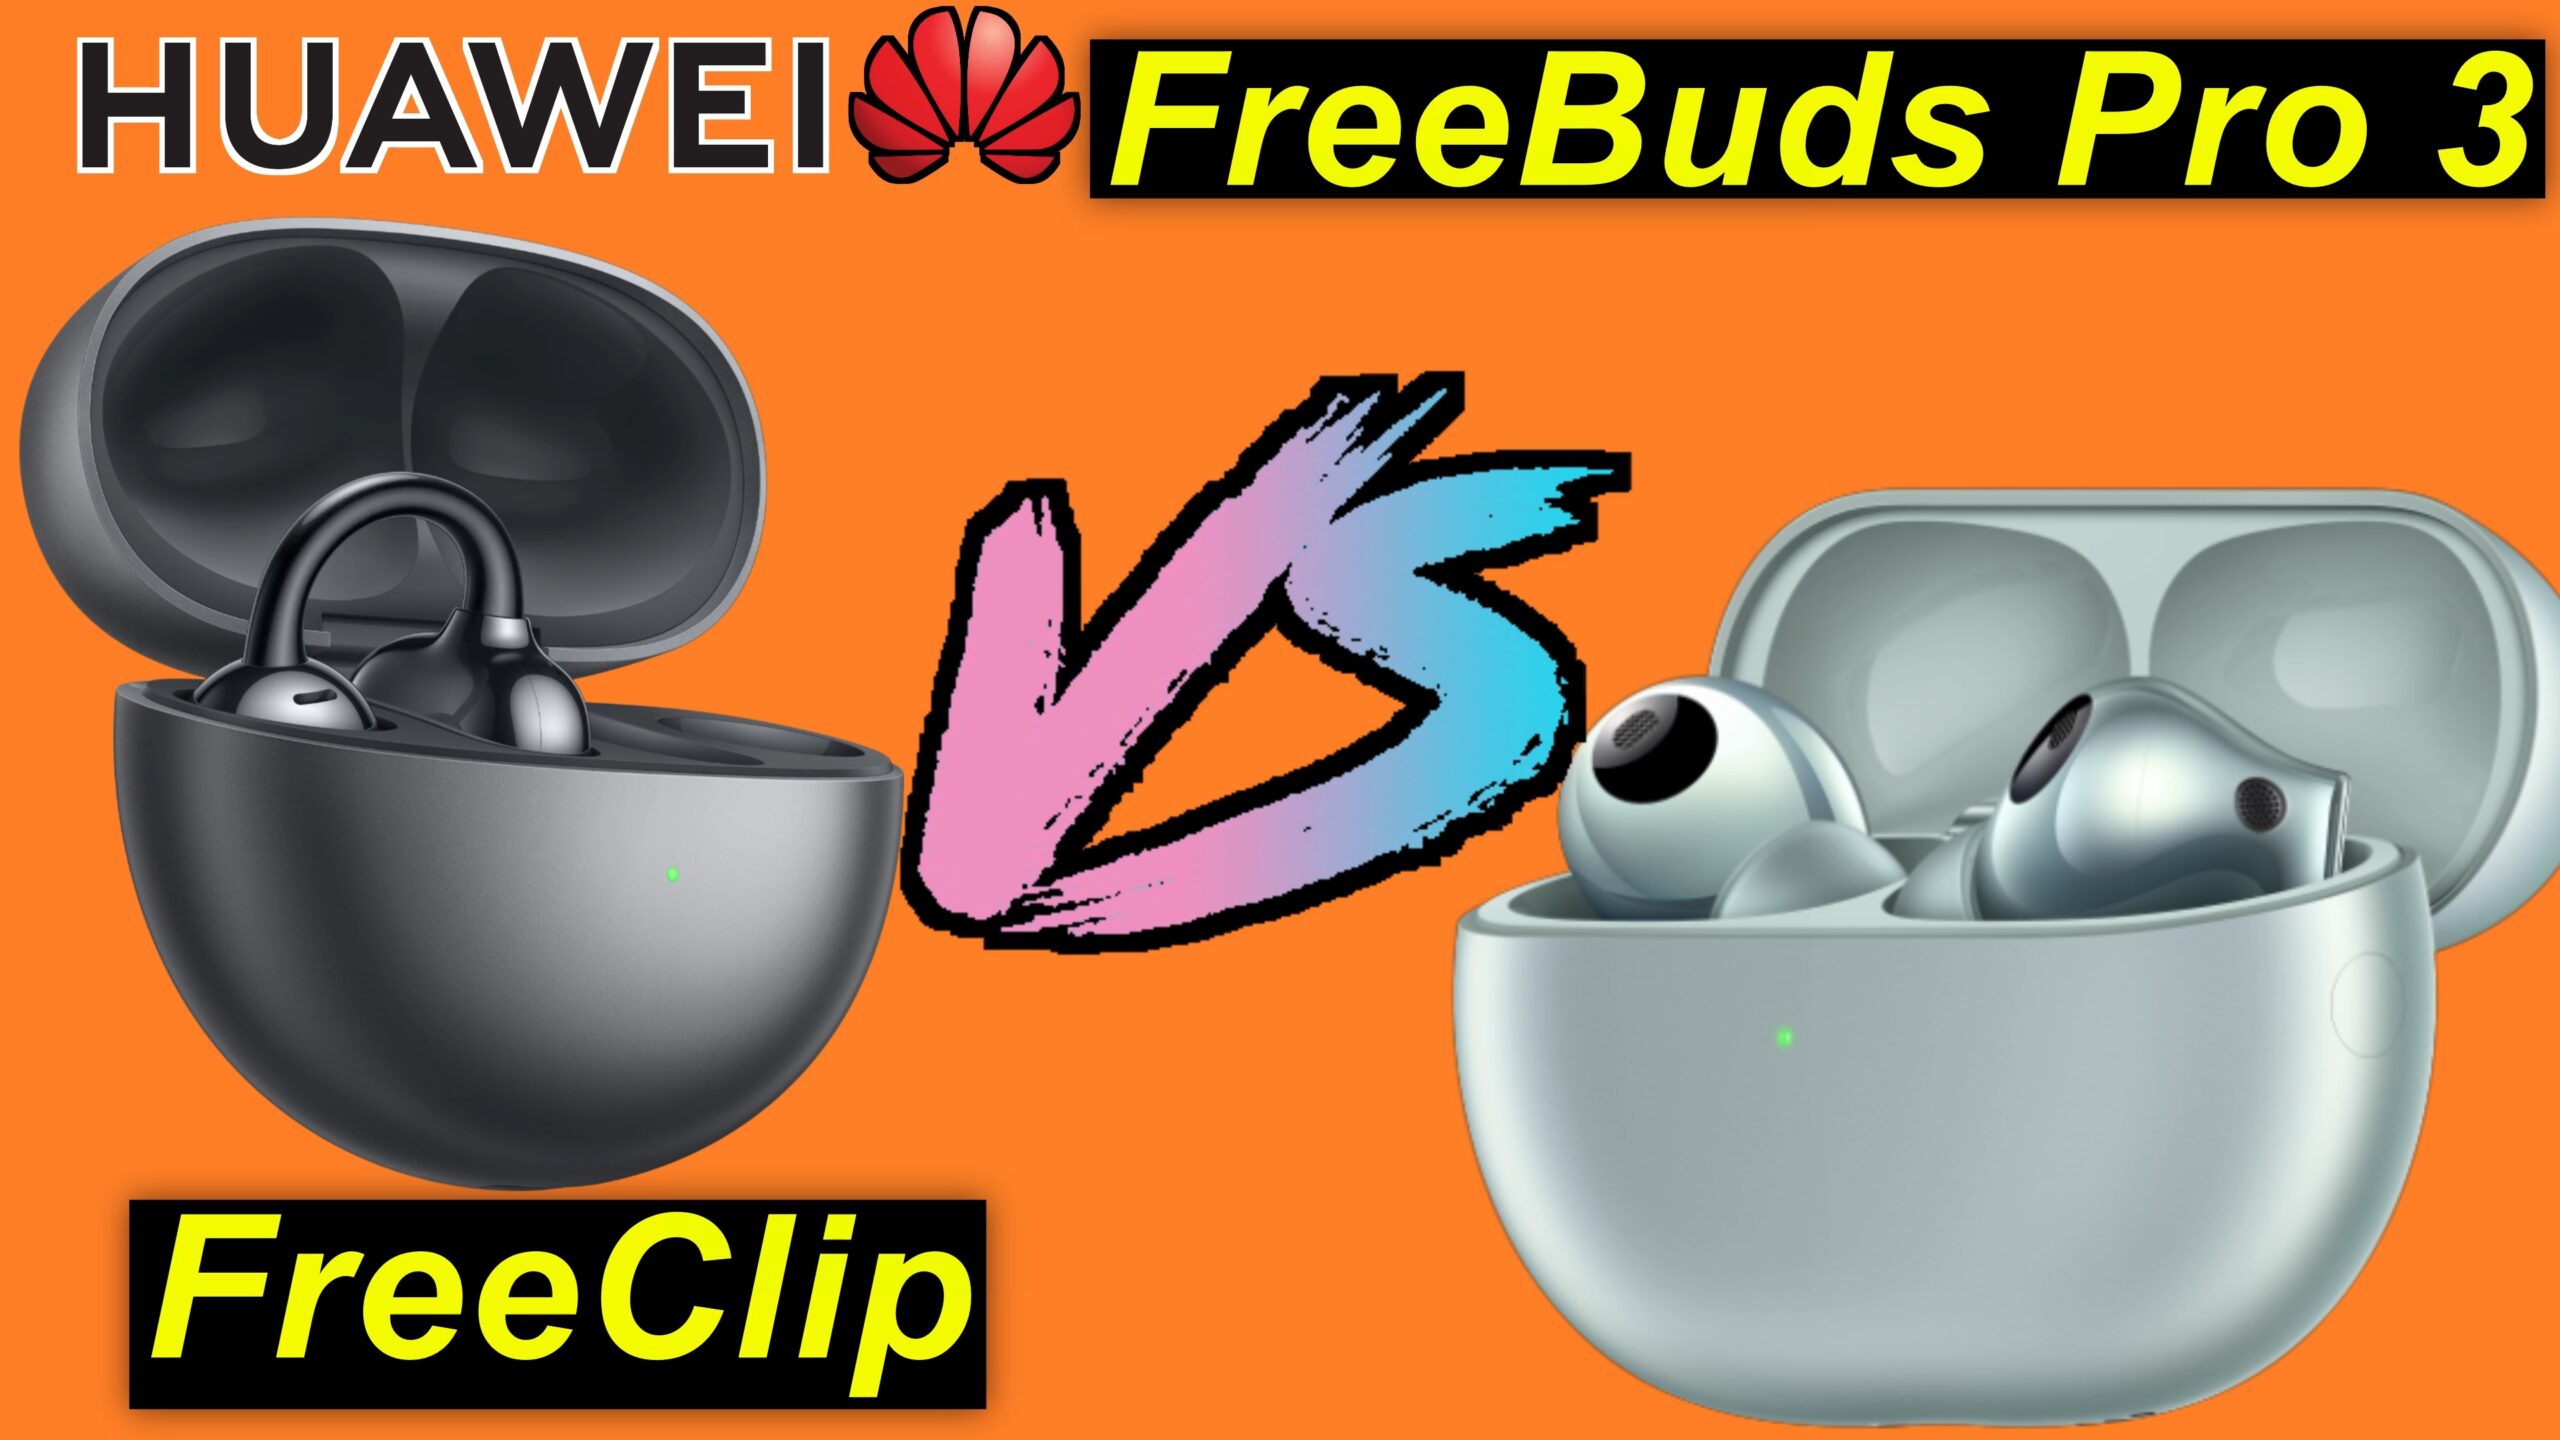 Huawei: FreeBuds Pro 3 versus FreeClip